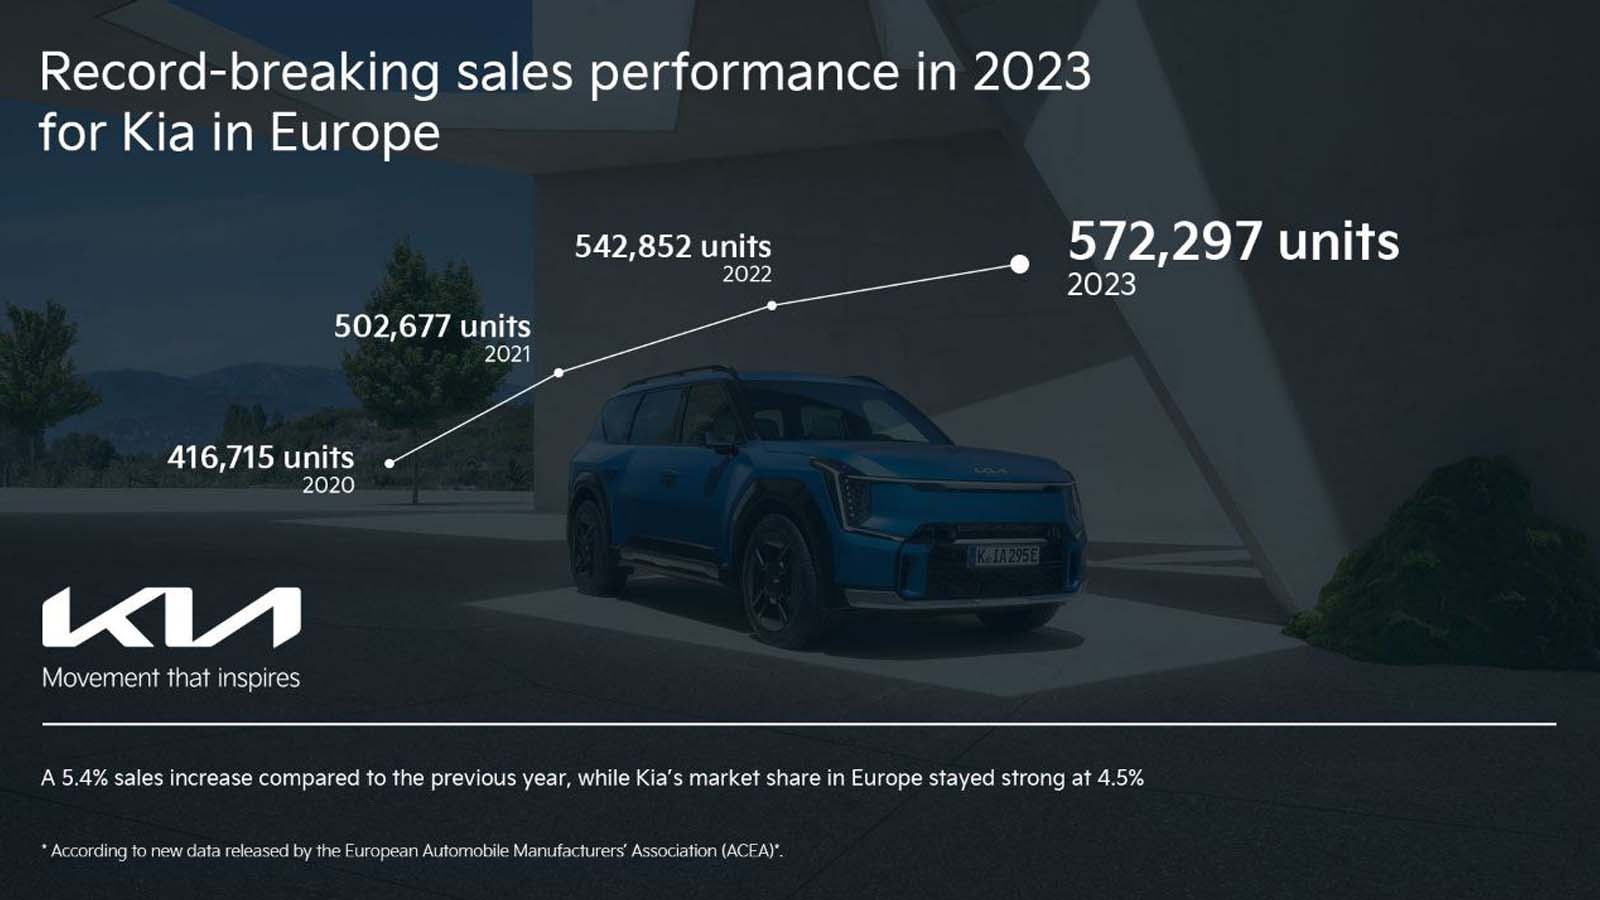 Il ruolo chiave dei veicoli elettrificati nel raggiungimento del record di vendite di Kia in Europa